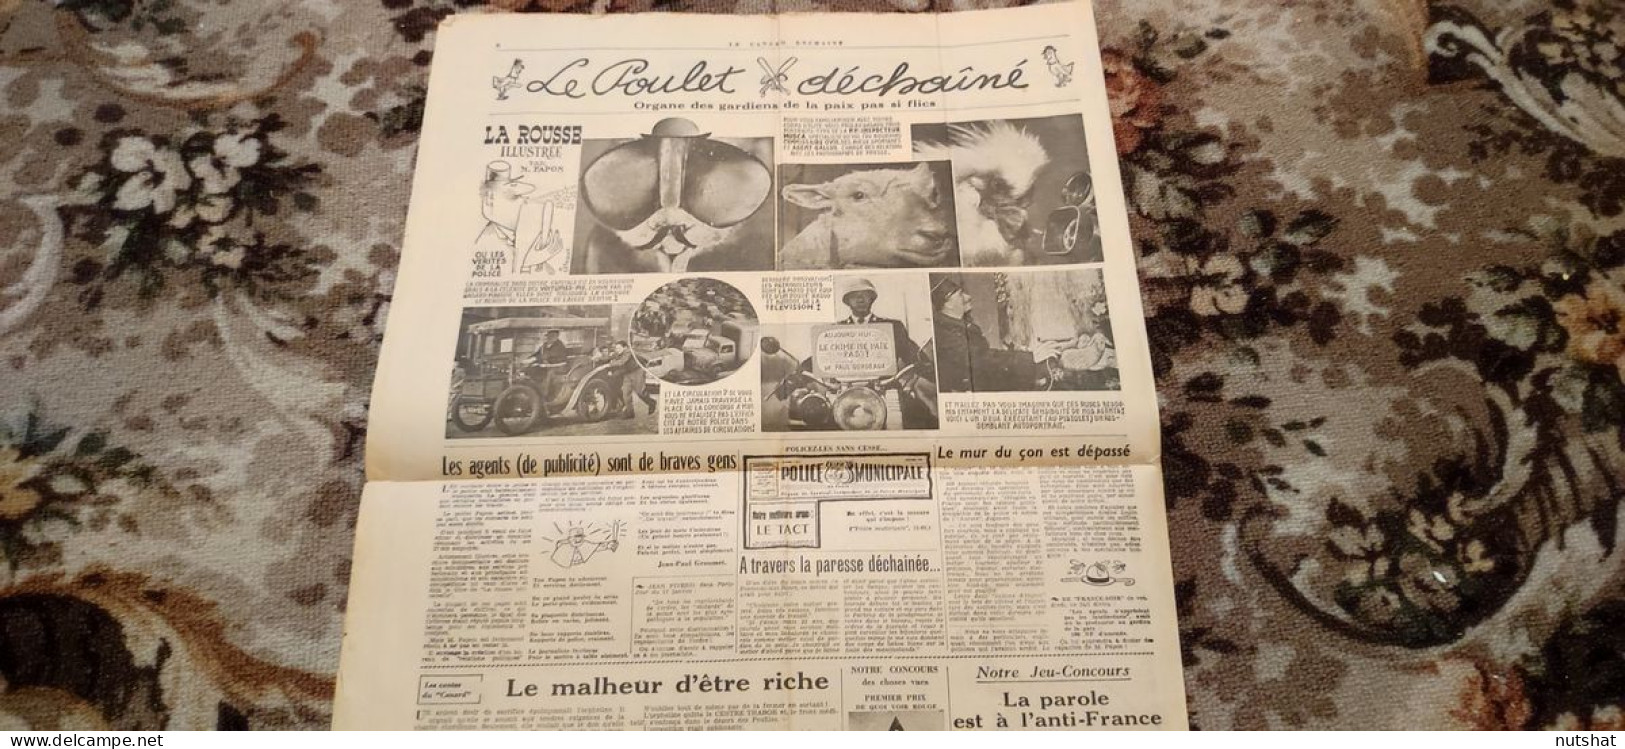 CANARD ENCHAINE 2101 25.01.1961 Le POULET DECHAINE ORGANE Des GARDIENS De PAIX - Politics